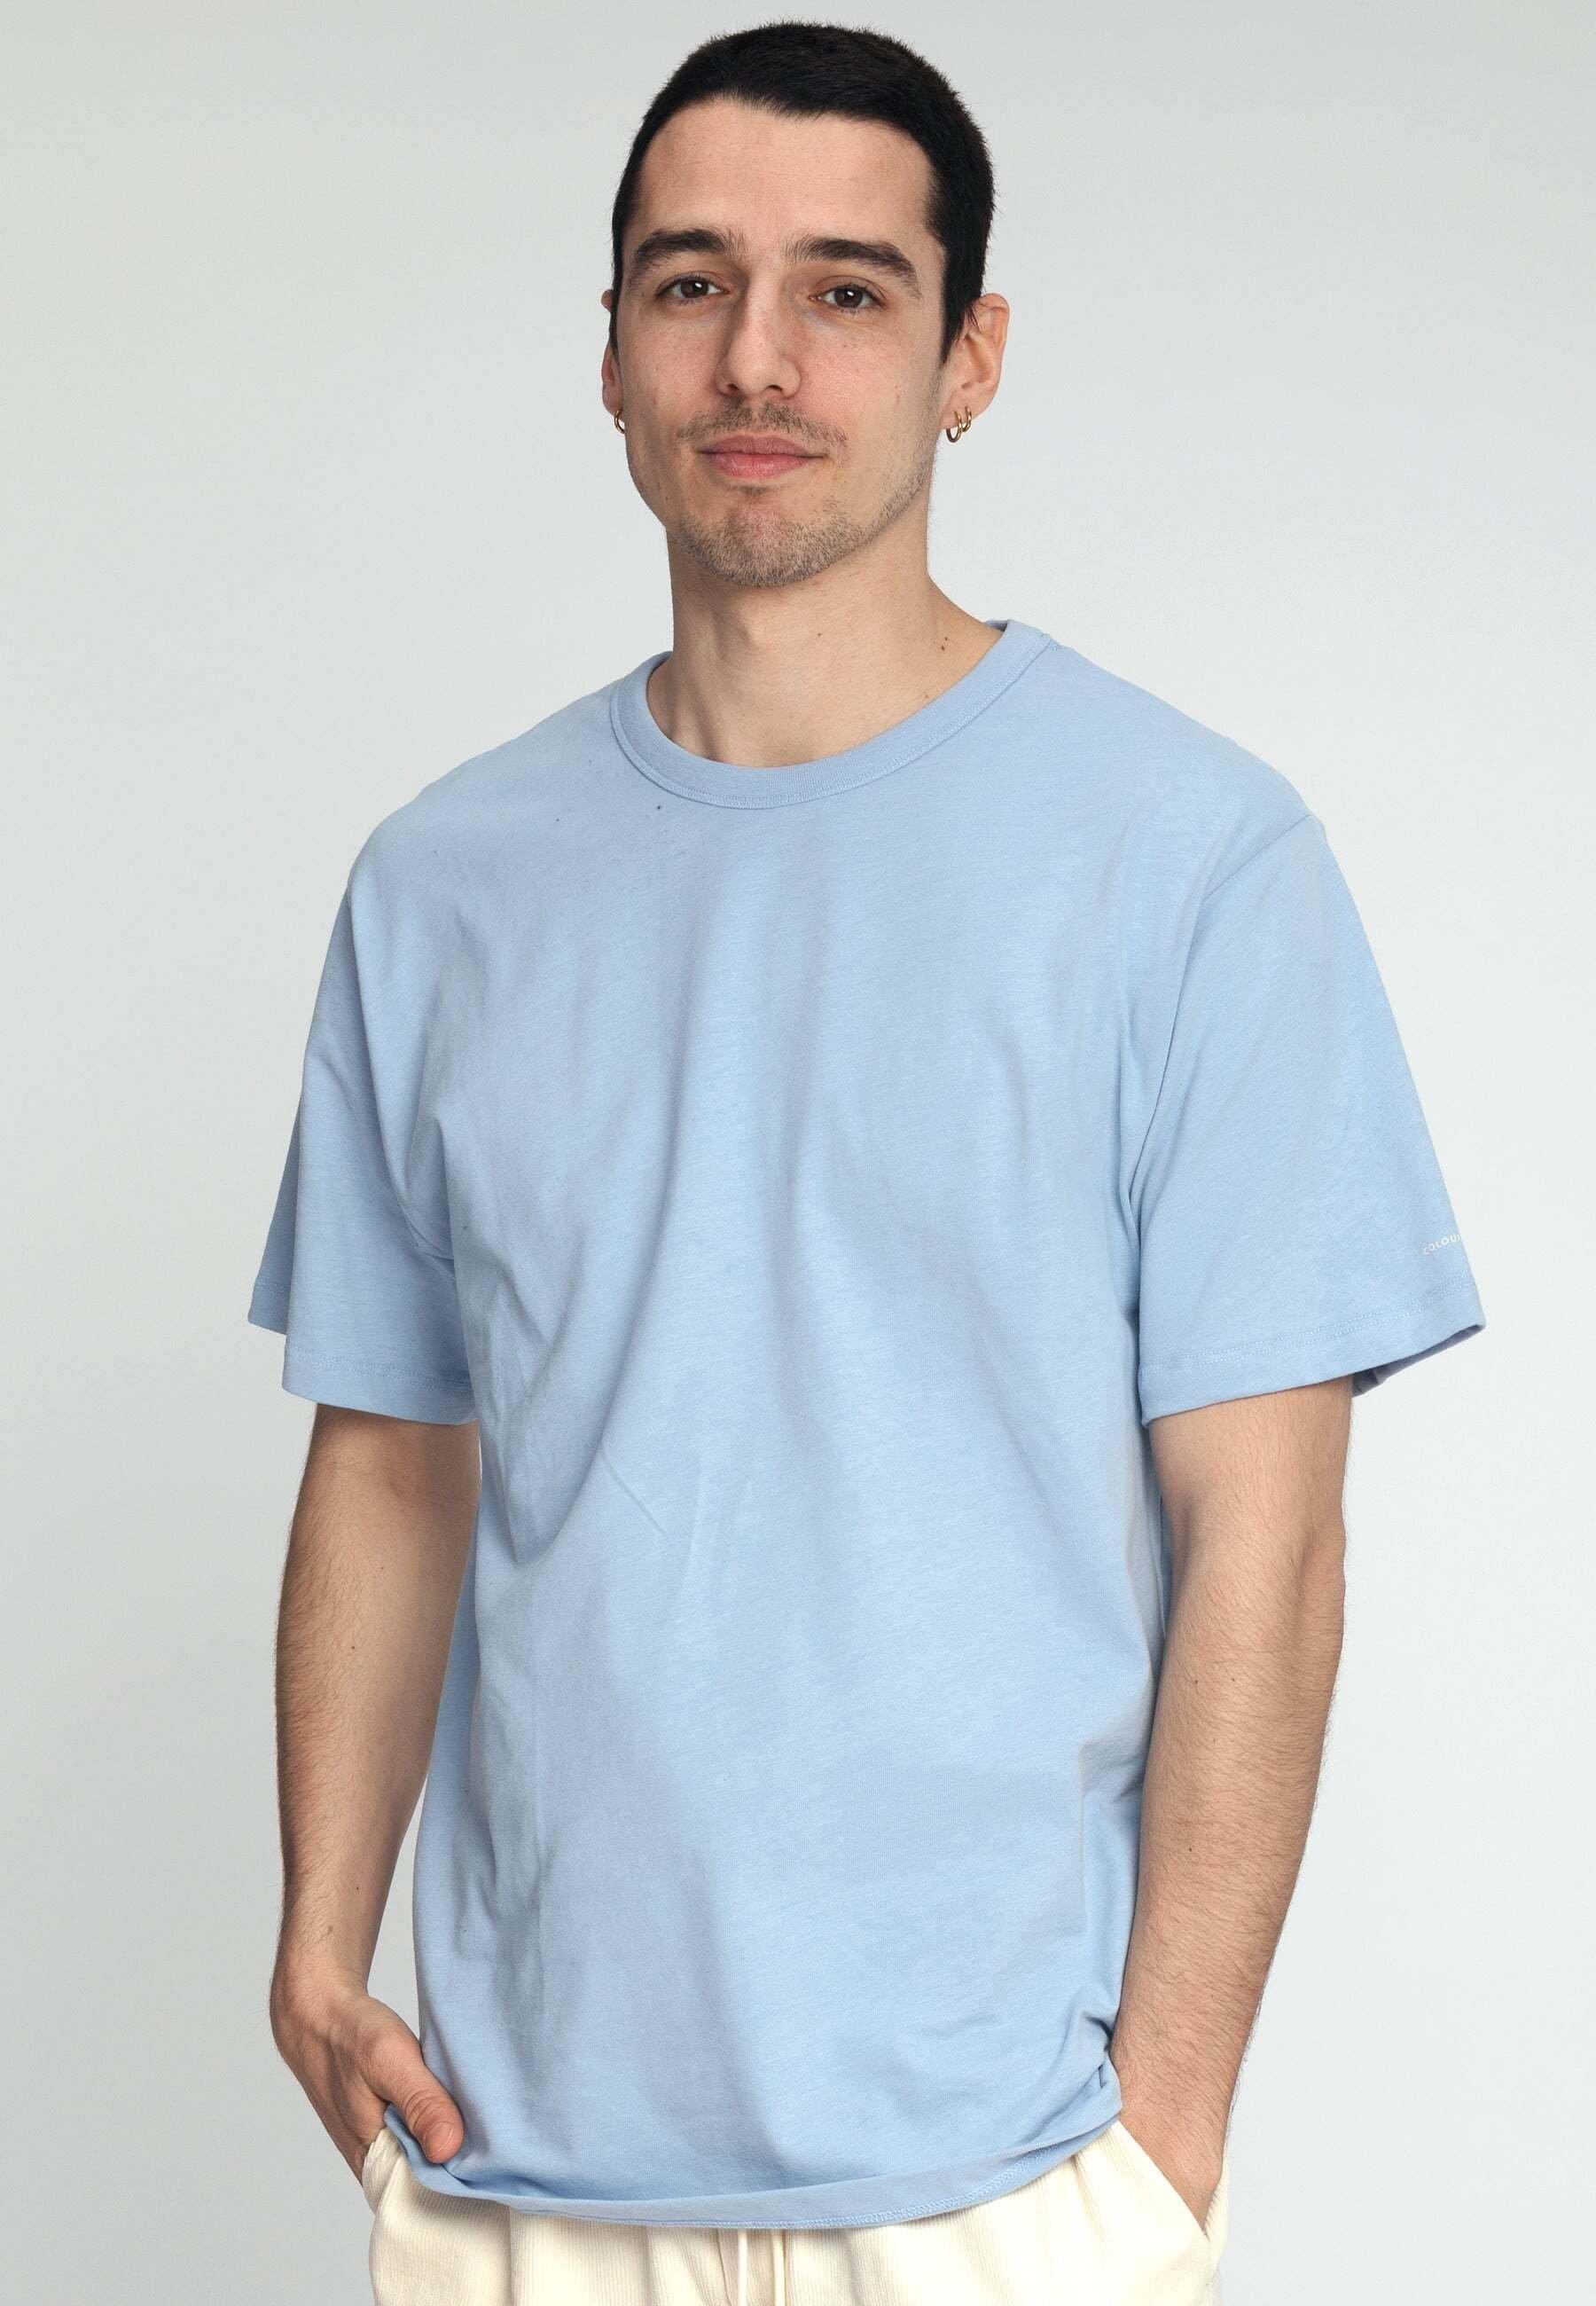 T-shirts T-shirt Mfaos Print Herren Blau M von Colours & Sons